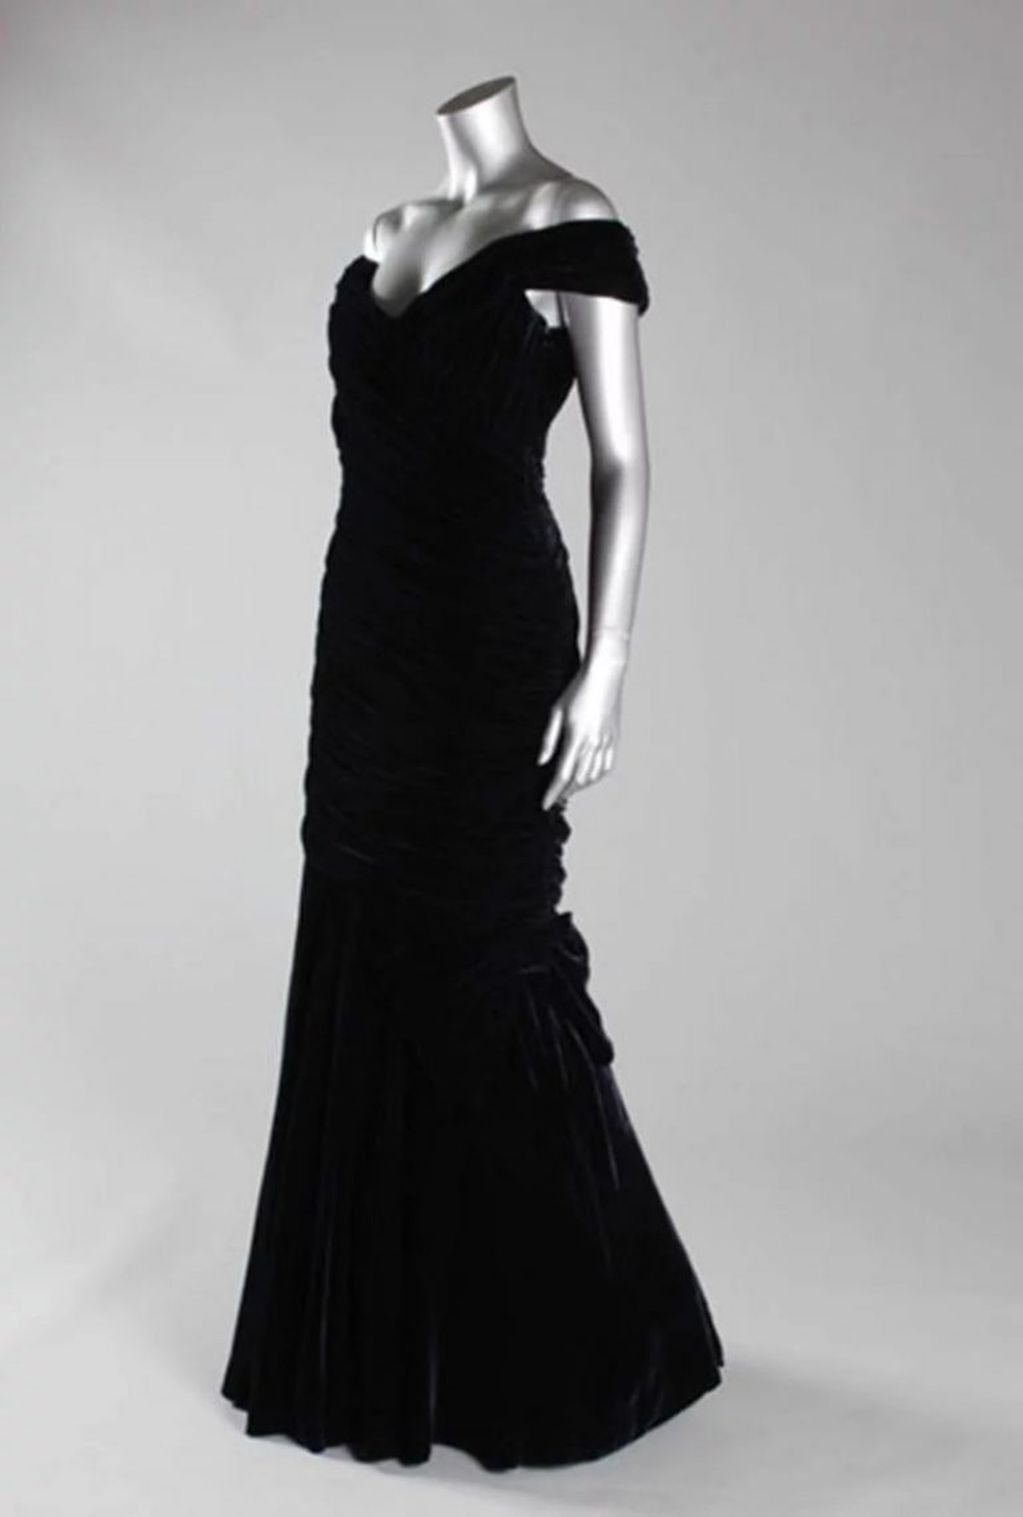 Este es el vestido que usó Lady Di en la gala en la que bailó junto a John Travolta, y que será subastado el próximo 9 de diciembre (Foto: Daily Mail)